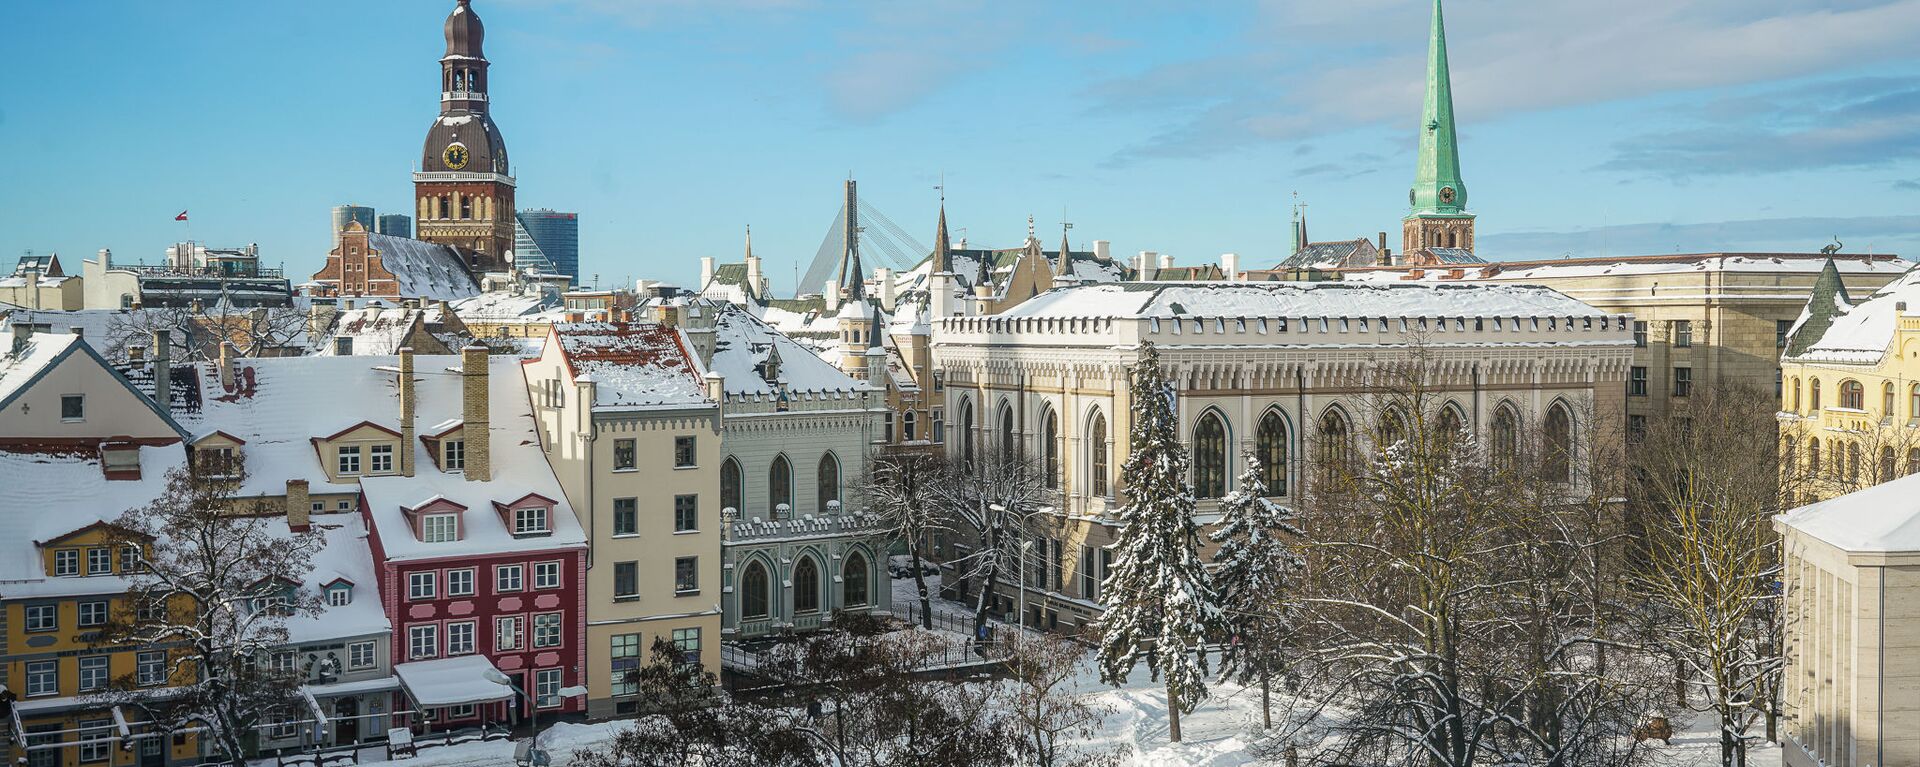 Вид на Старую Ригу и Домский собор зимой - Sputnik Латвия, 1920, 19.11.2021